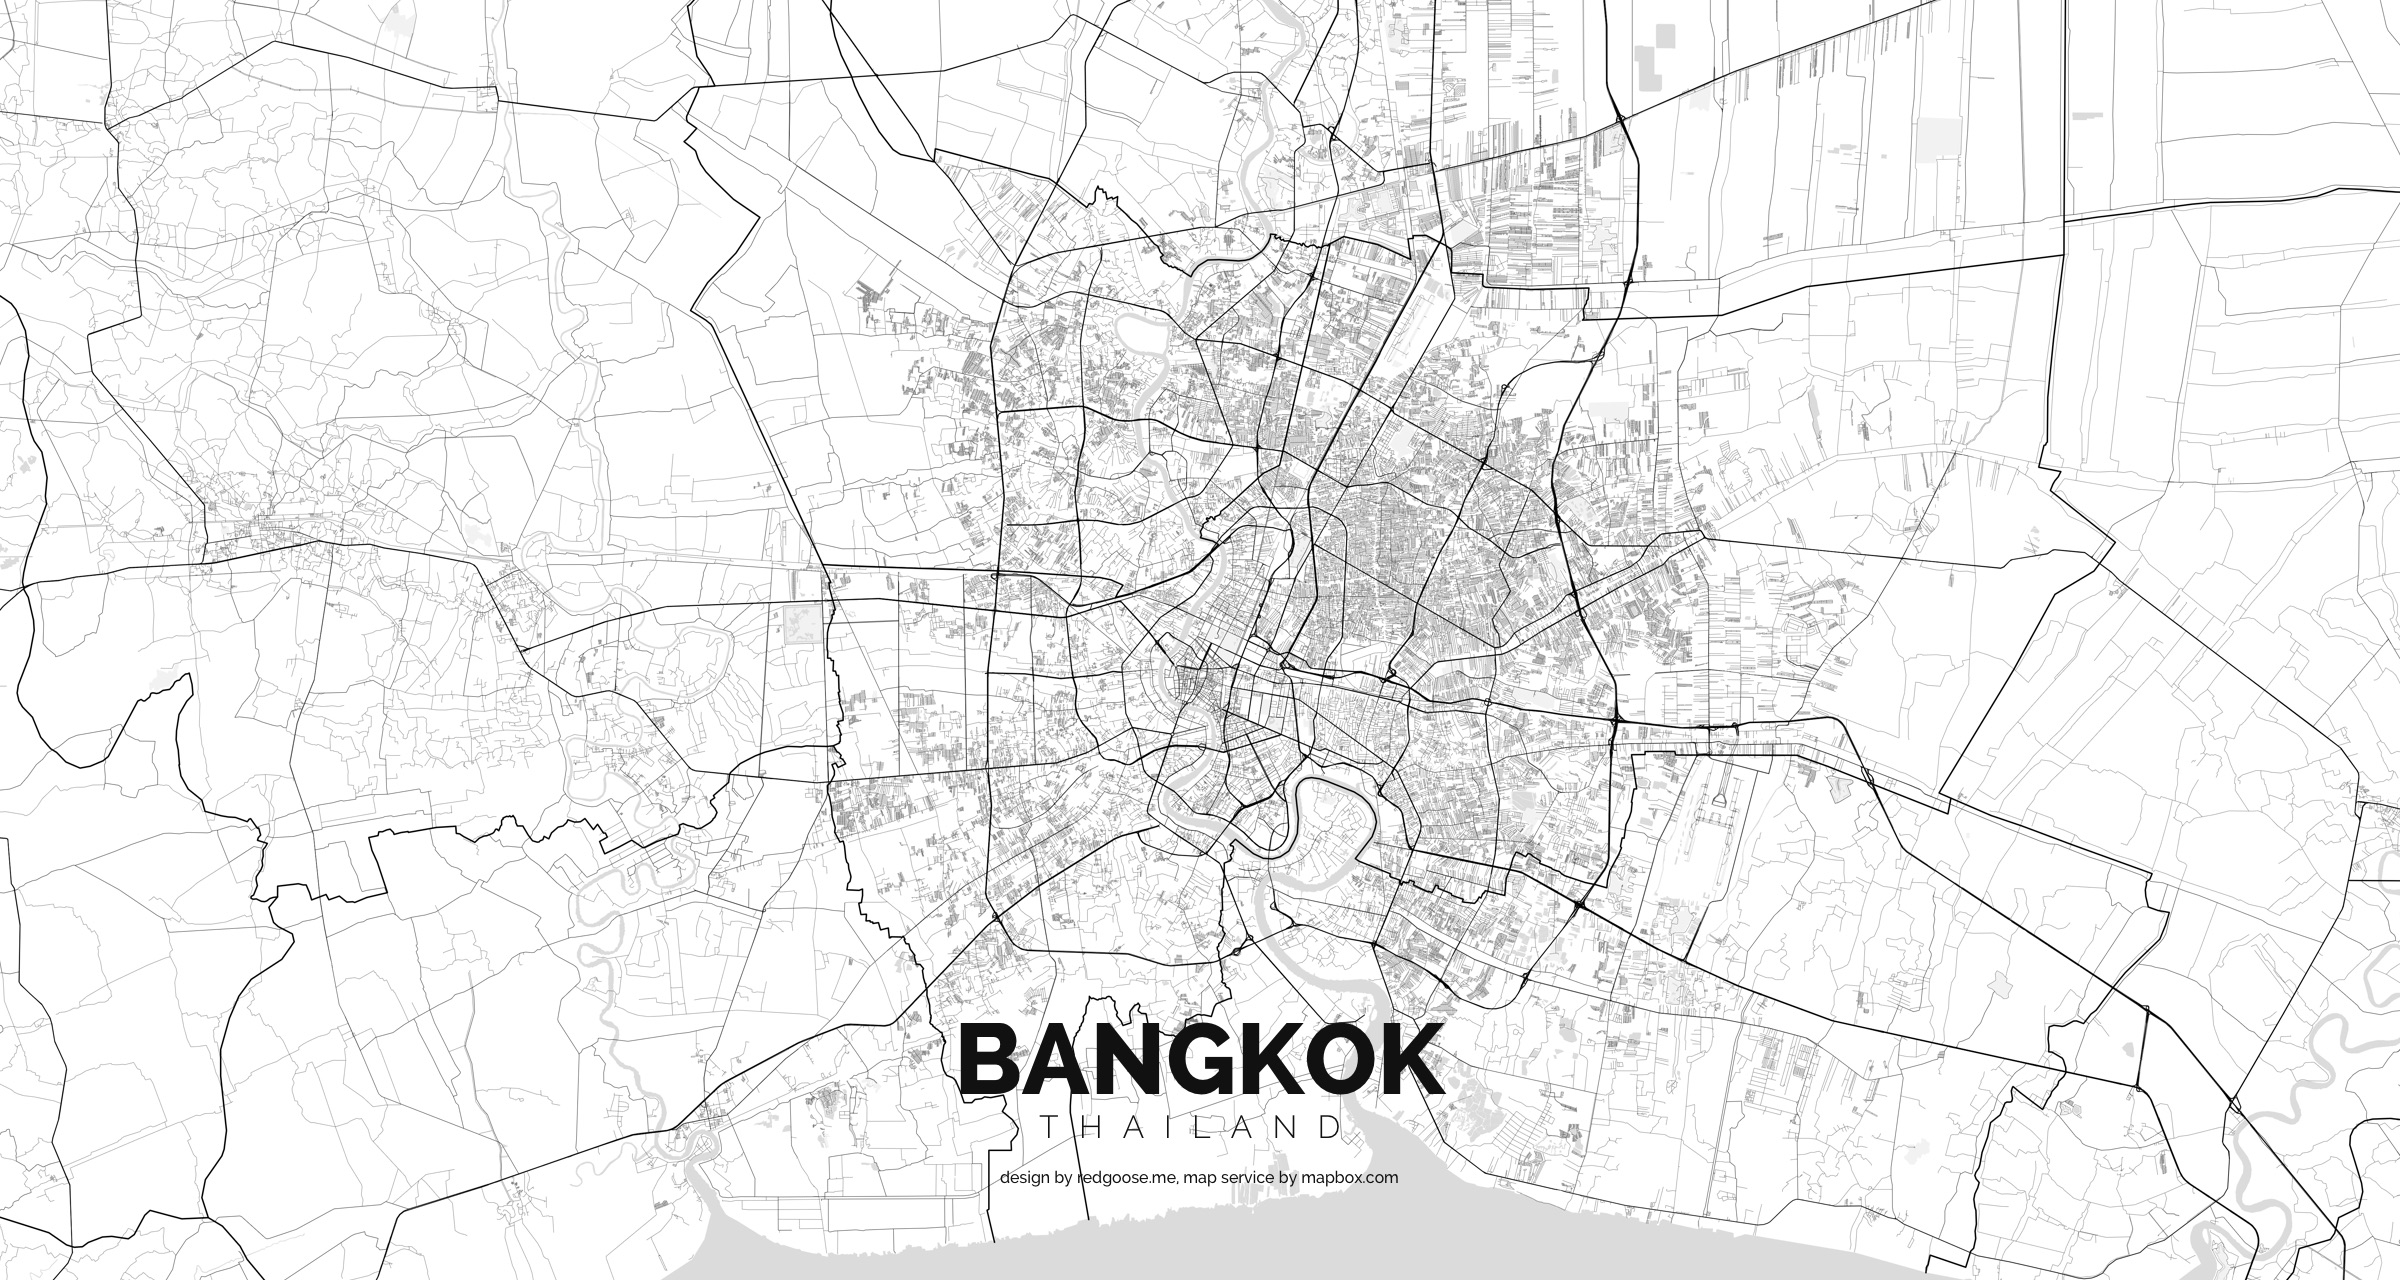 Thailand_-_Bangkok.jpg